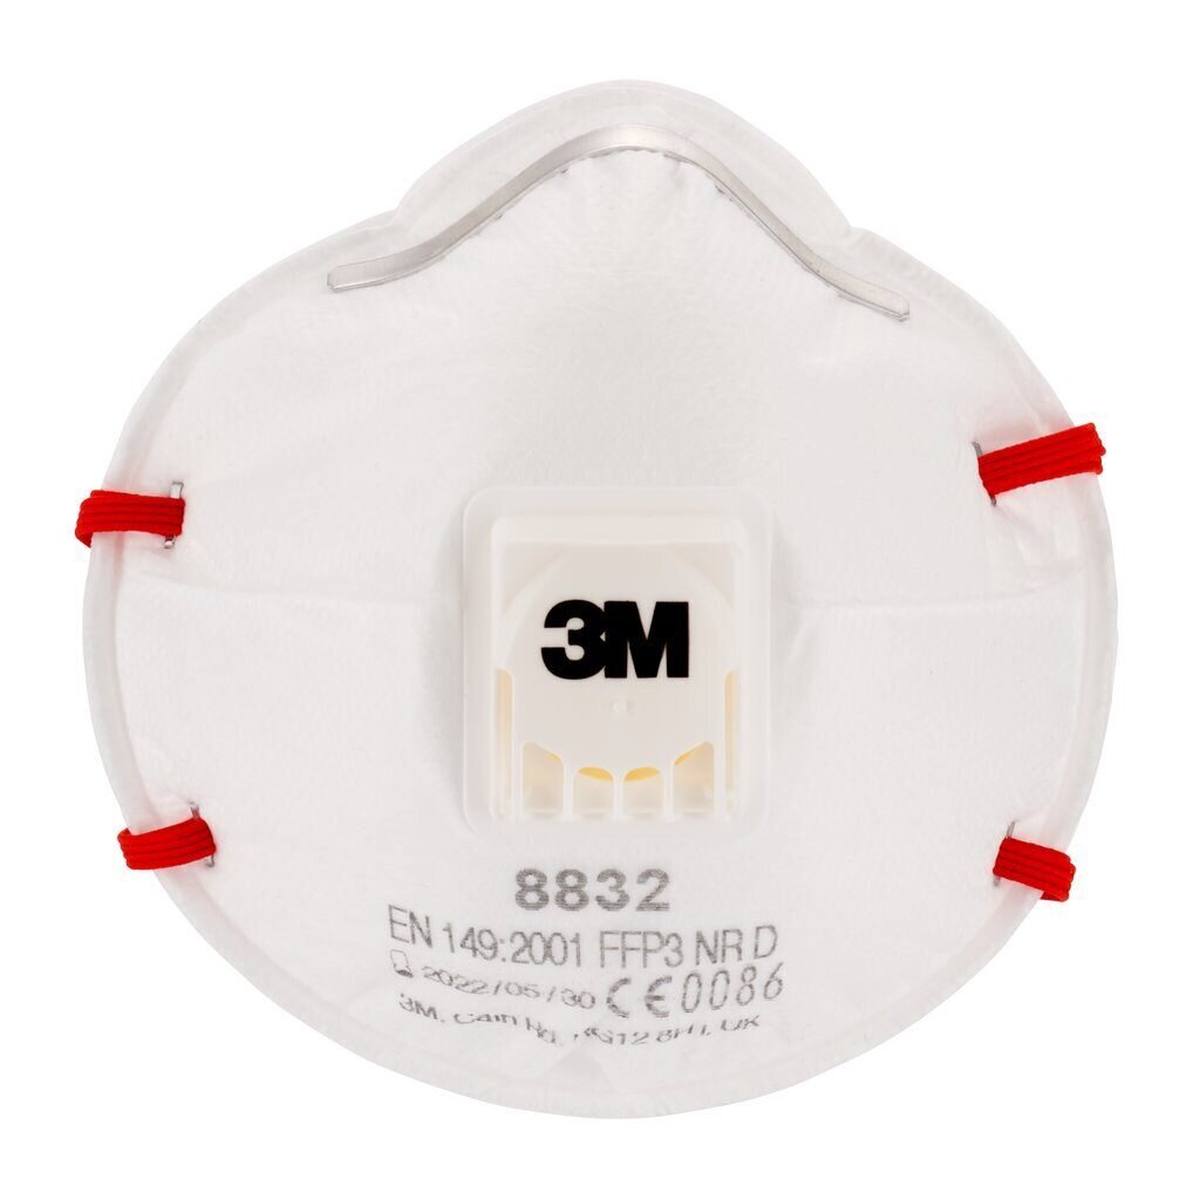 3M 8832 Atemschutzmaske FFP3 NR D mit Cool-Flow Ausatemventil bis zum 30-fachen des Grenzwertes